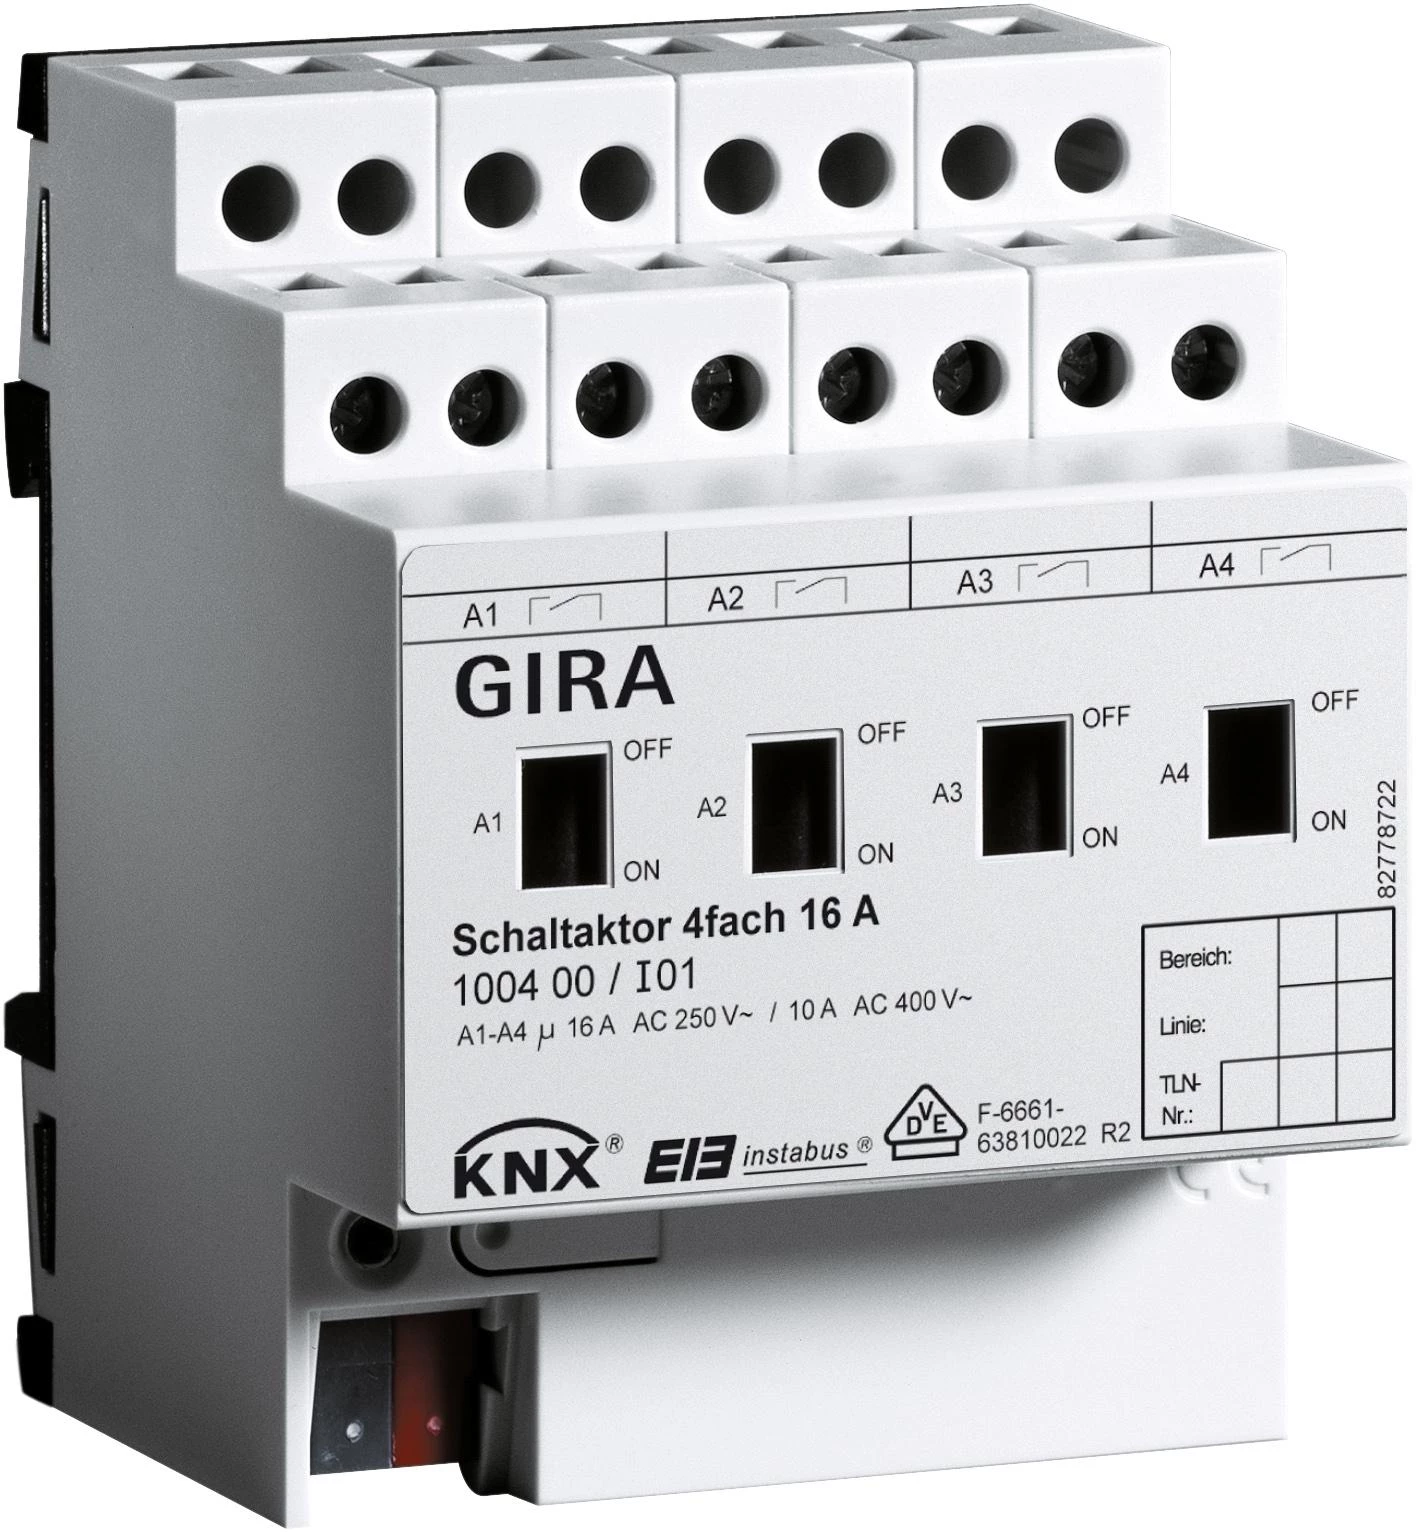  артикул 100400 название Gira Instabus KNX/EIB Исполнительное устройство 4-канальное, с ручным управлением